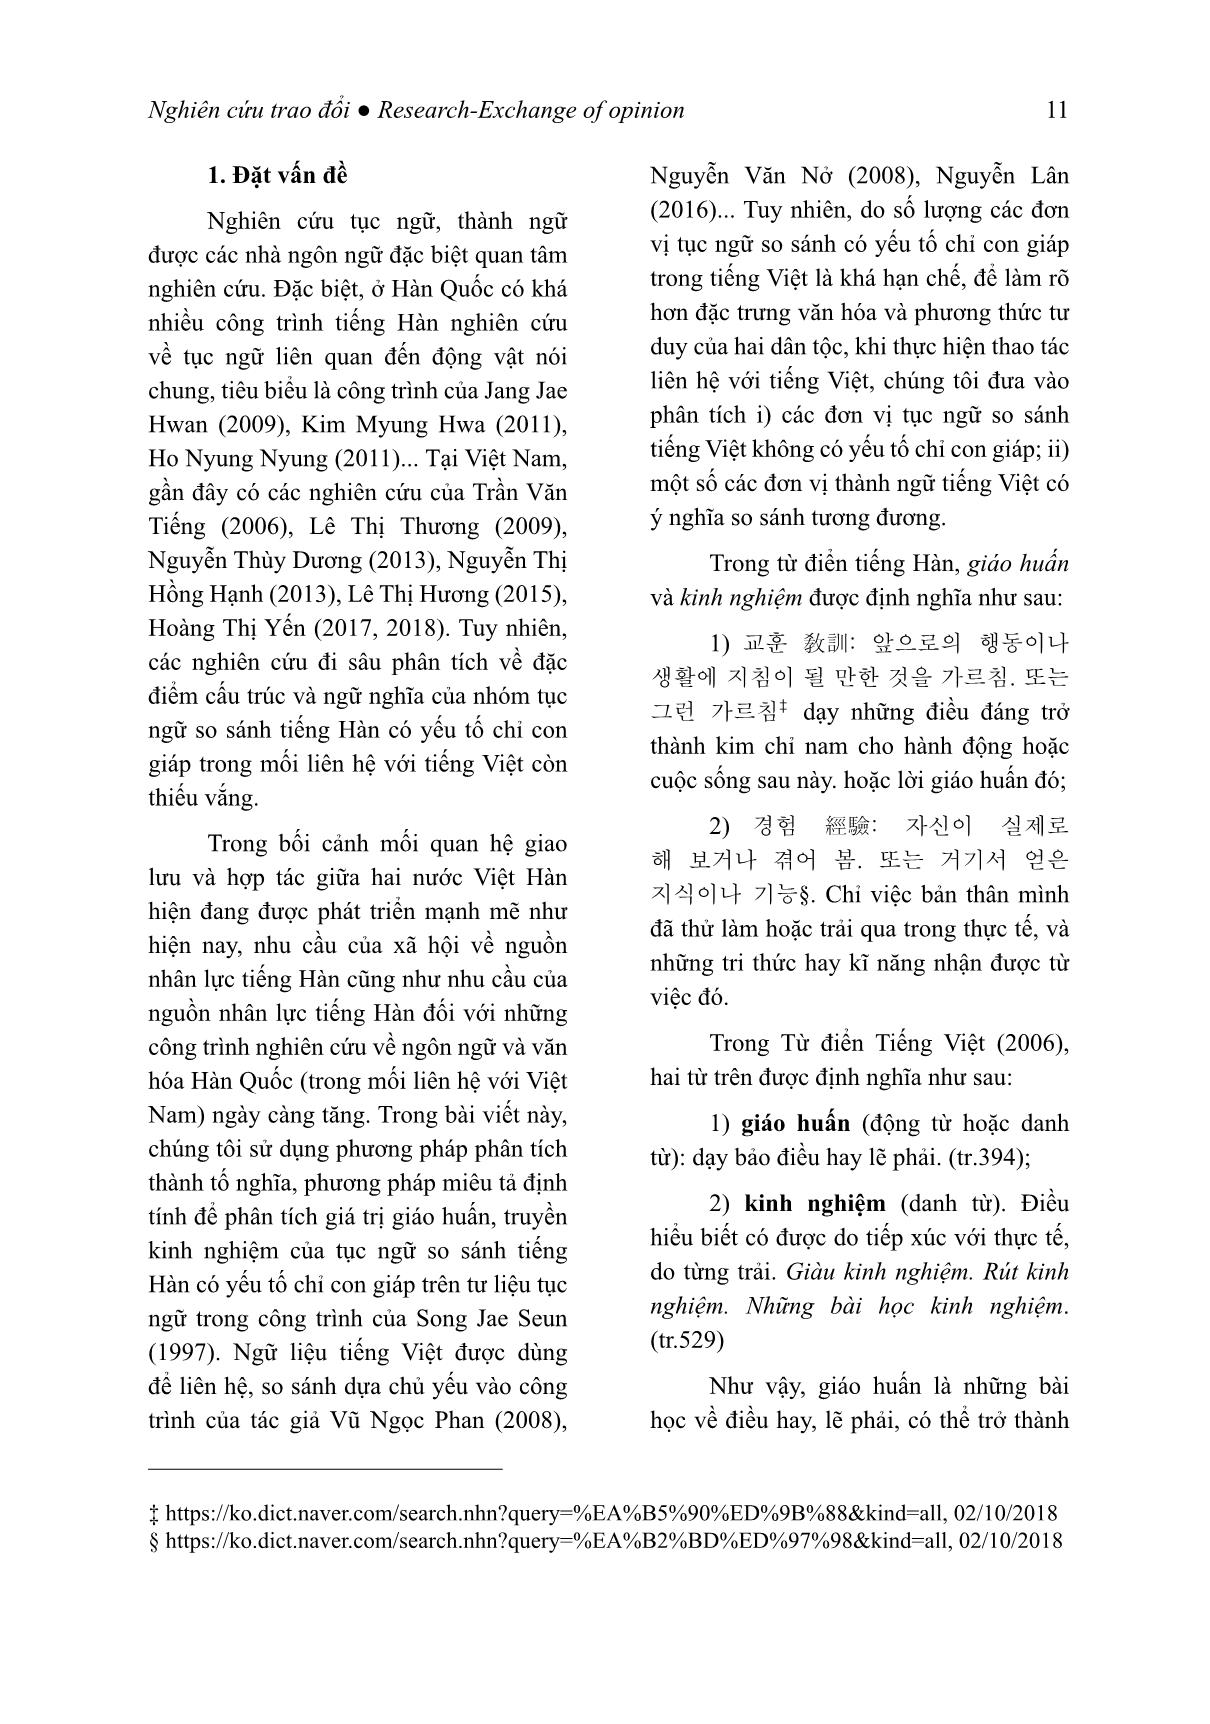 Giá trị giáo huấn của tục ngữ so sánh tiếng Hàn (Trọng tâm là các đơn vị có yếu tố chỉ con giáp) trang 2